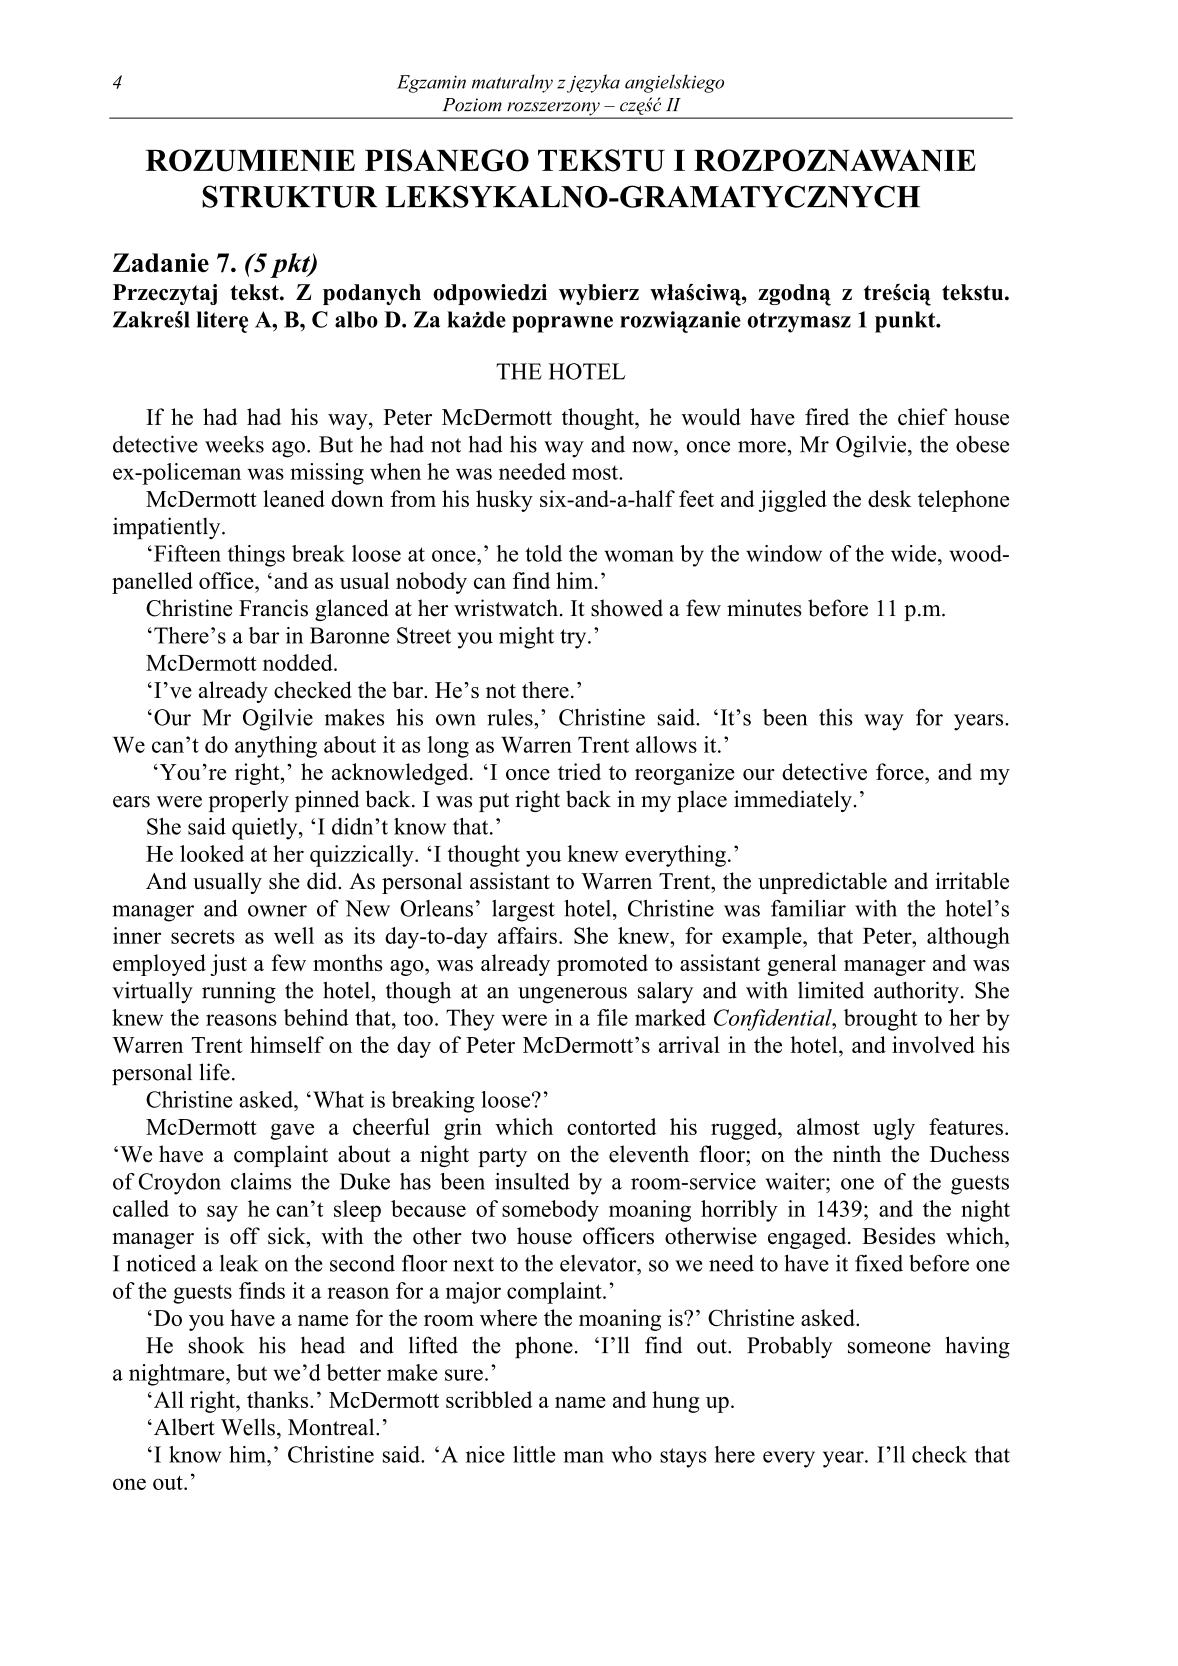 pytania-jezyk-angielski-poziom-rozszerzony-czesc-II-matura-2014-str.4